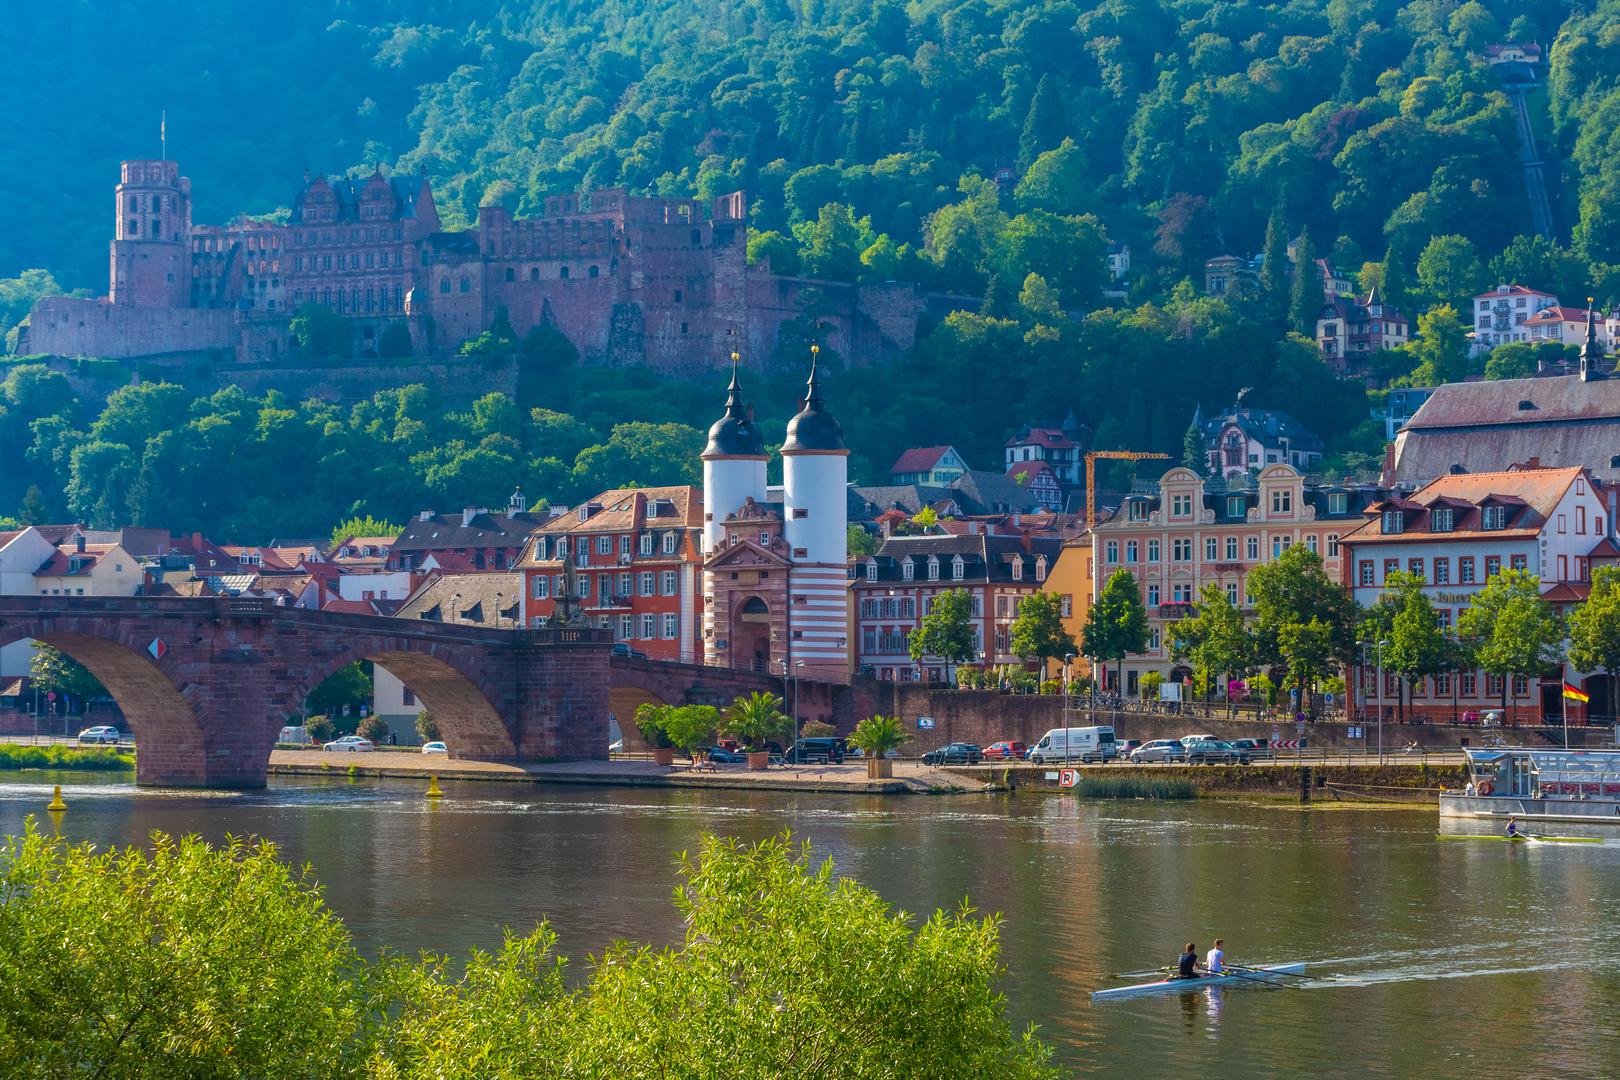 8. Njemačka: Njemačka ne privlači toliko pozornosti kao Francuska ili Španjolska, ali je zemlja jedna od najljubaznijih za turiste na svijetu. Provjerite berlinsku hipstersku kulturu ili lutajte lijepim ulicama Heidelberga uz rijeku.